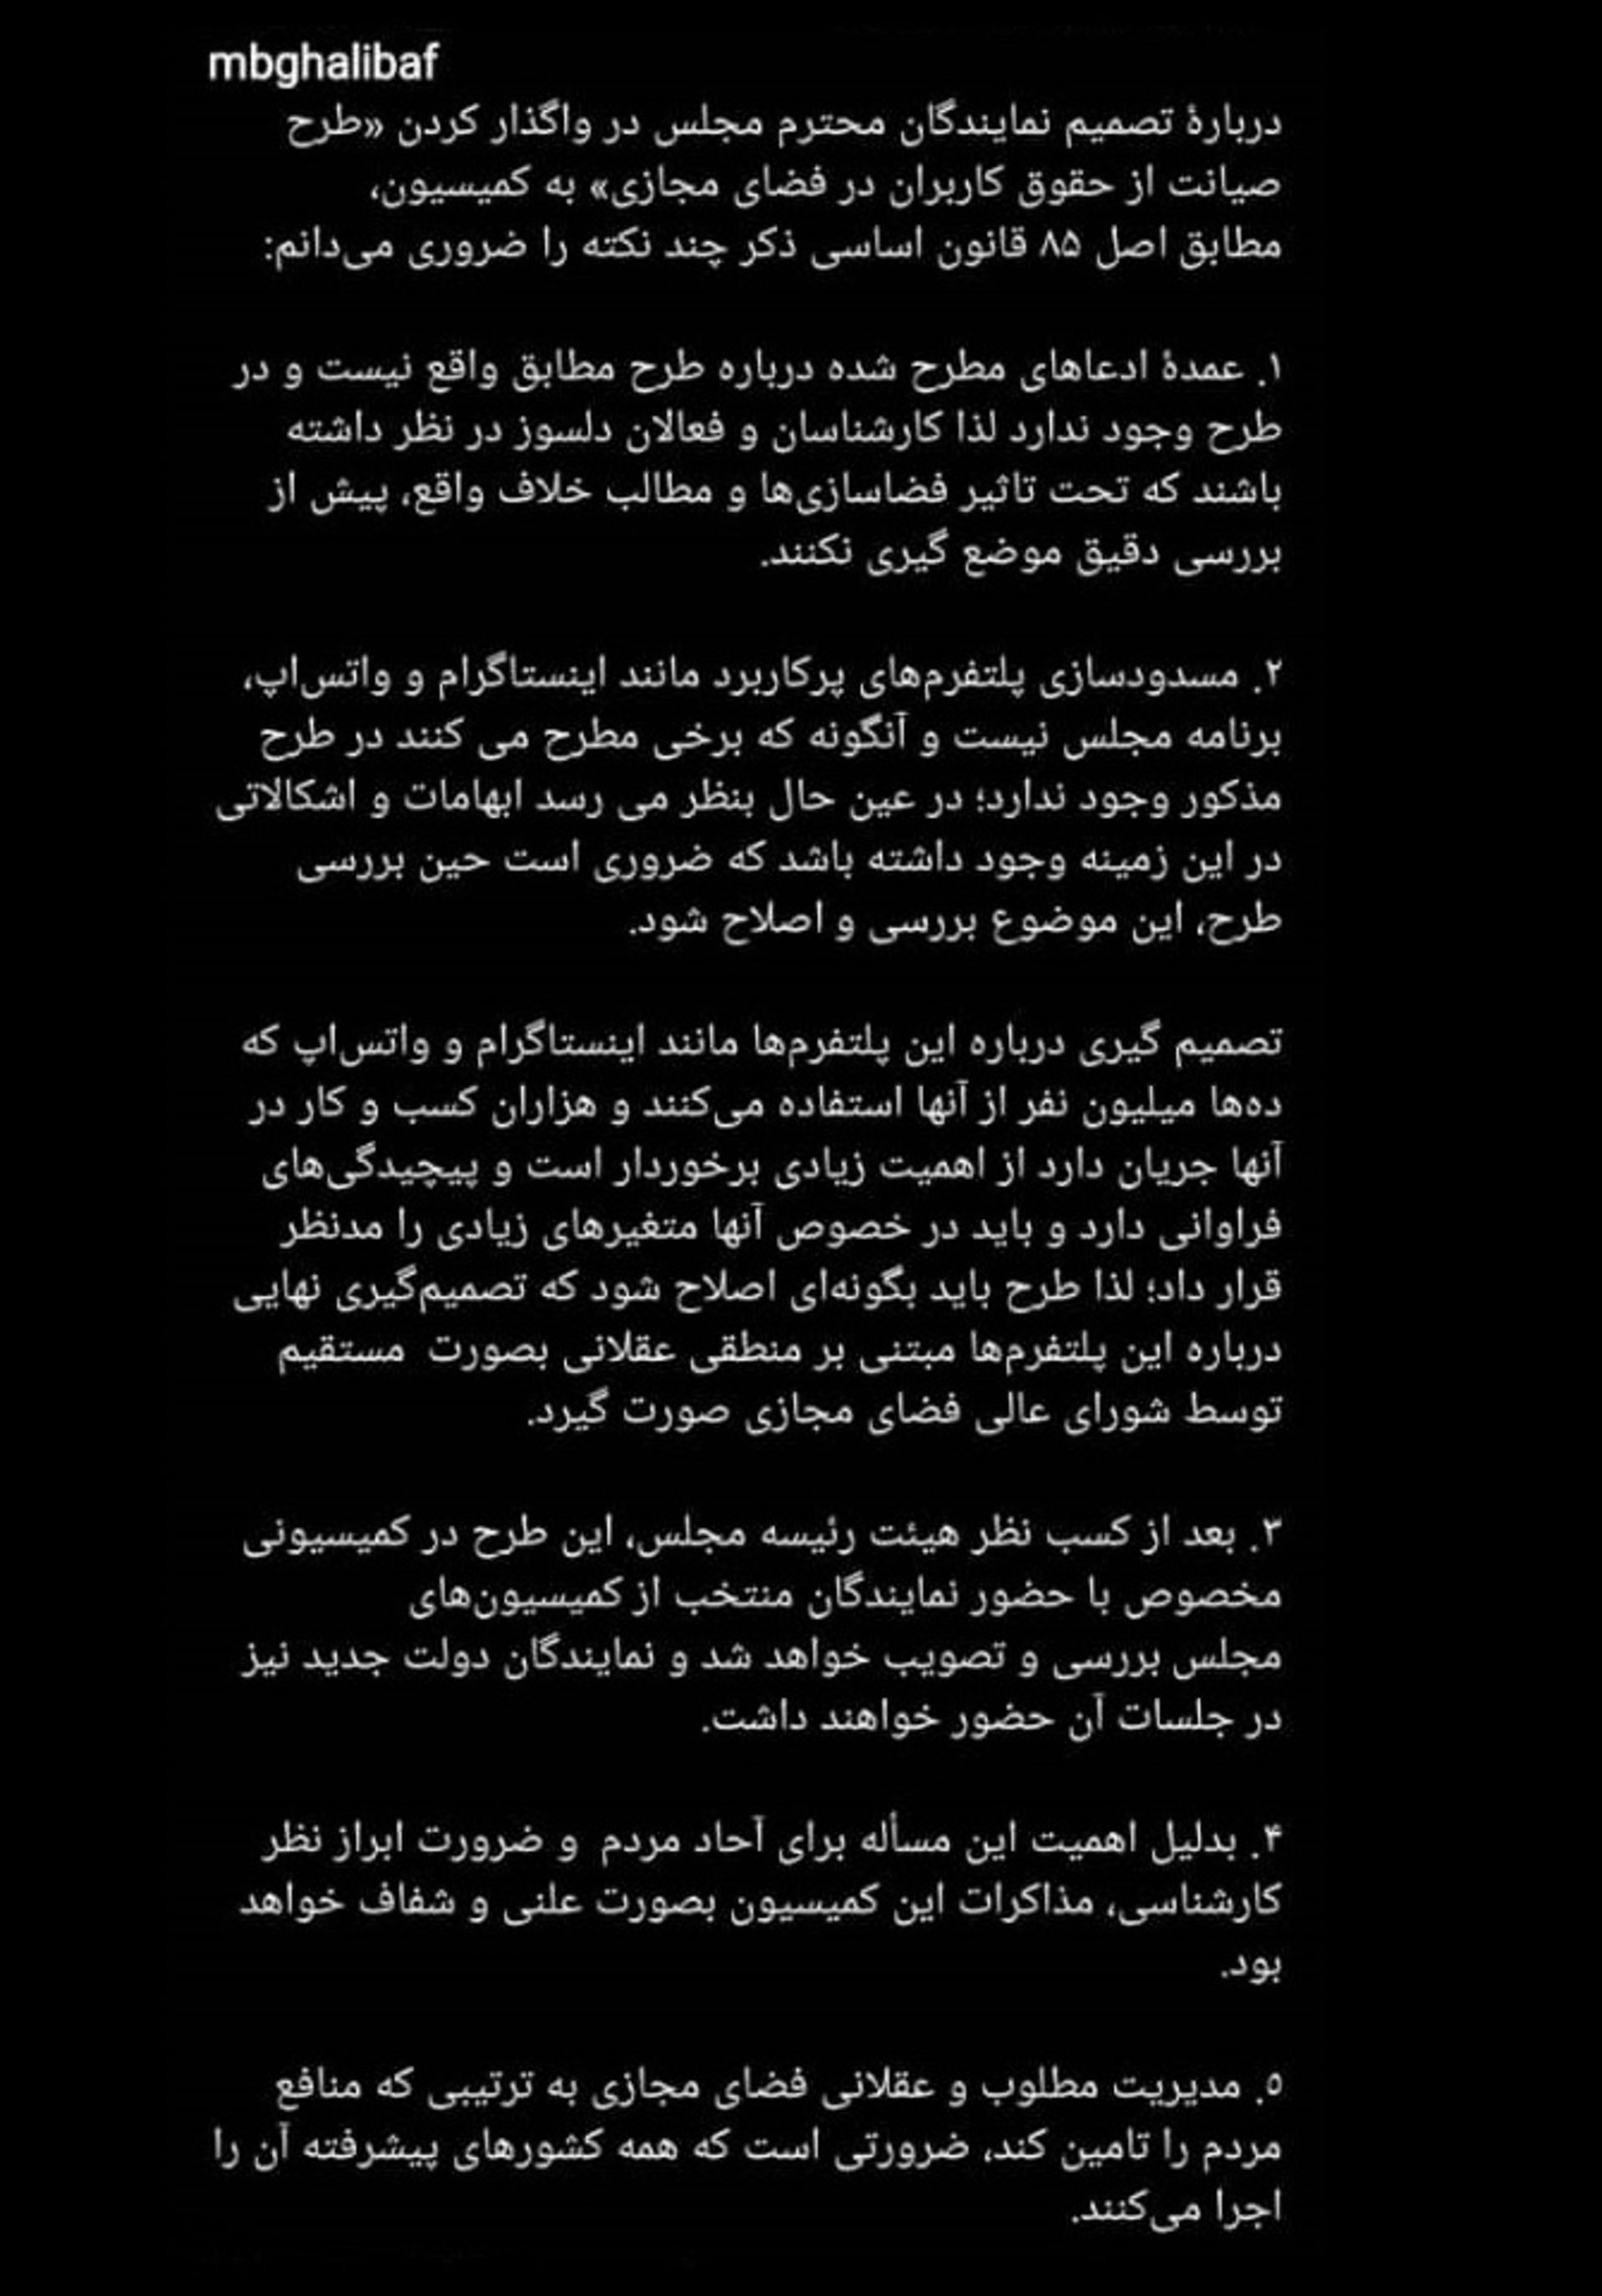 نظر  رئیس اصلی مجلس، محمد باقر قالیباف درمورد طرح صیانت از حقوق کاربران